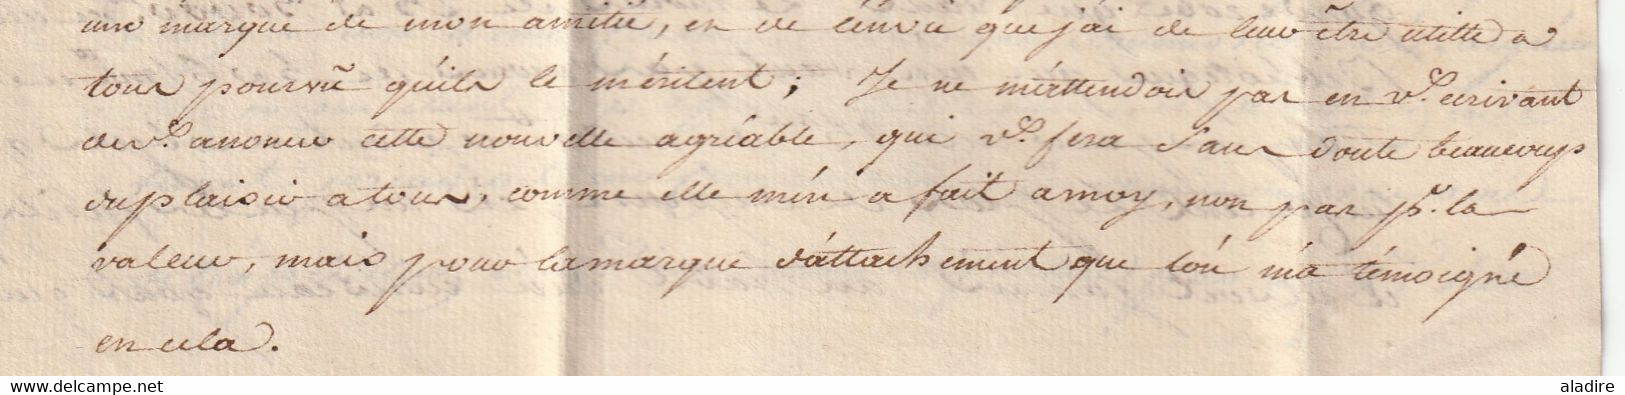 1777 - Marque manuscrite Marseille sur Lettre avec corresp  filiale de 3 p vers Pont de Camaret en Rouergue par Lodève